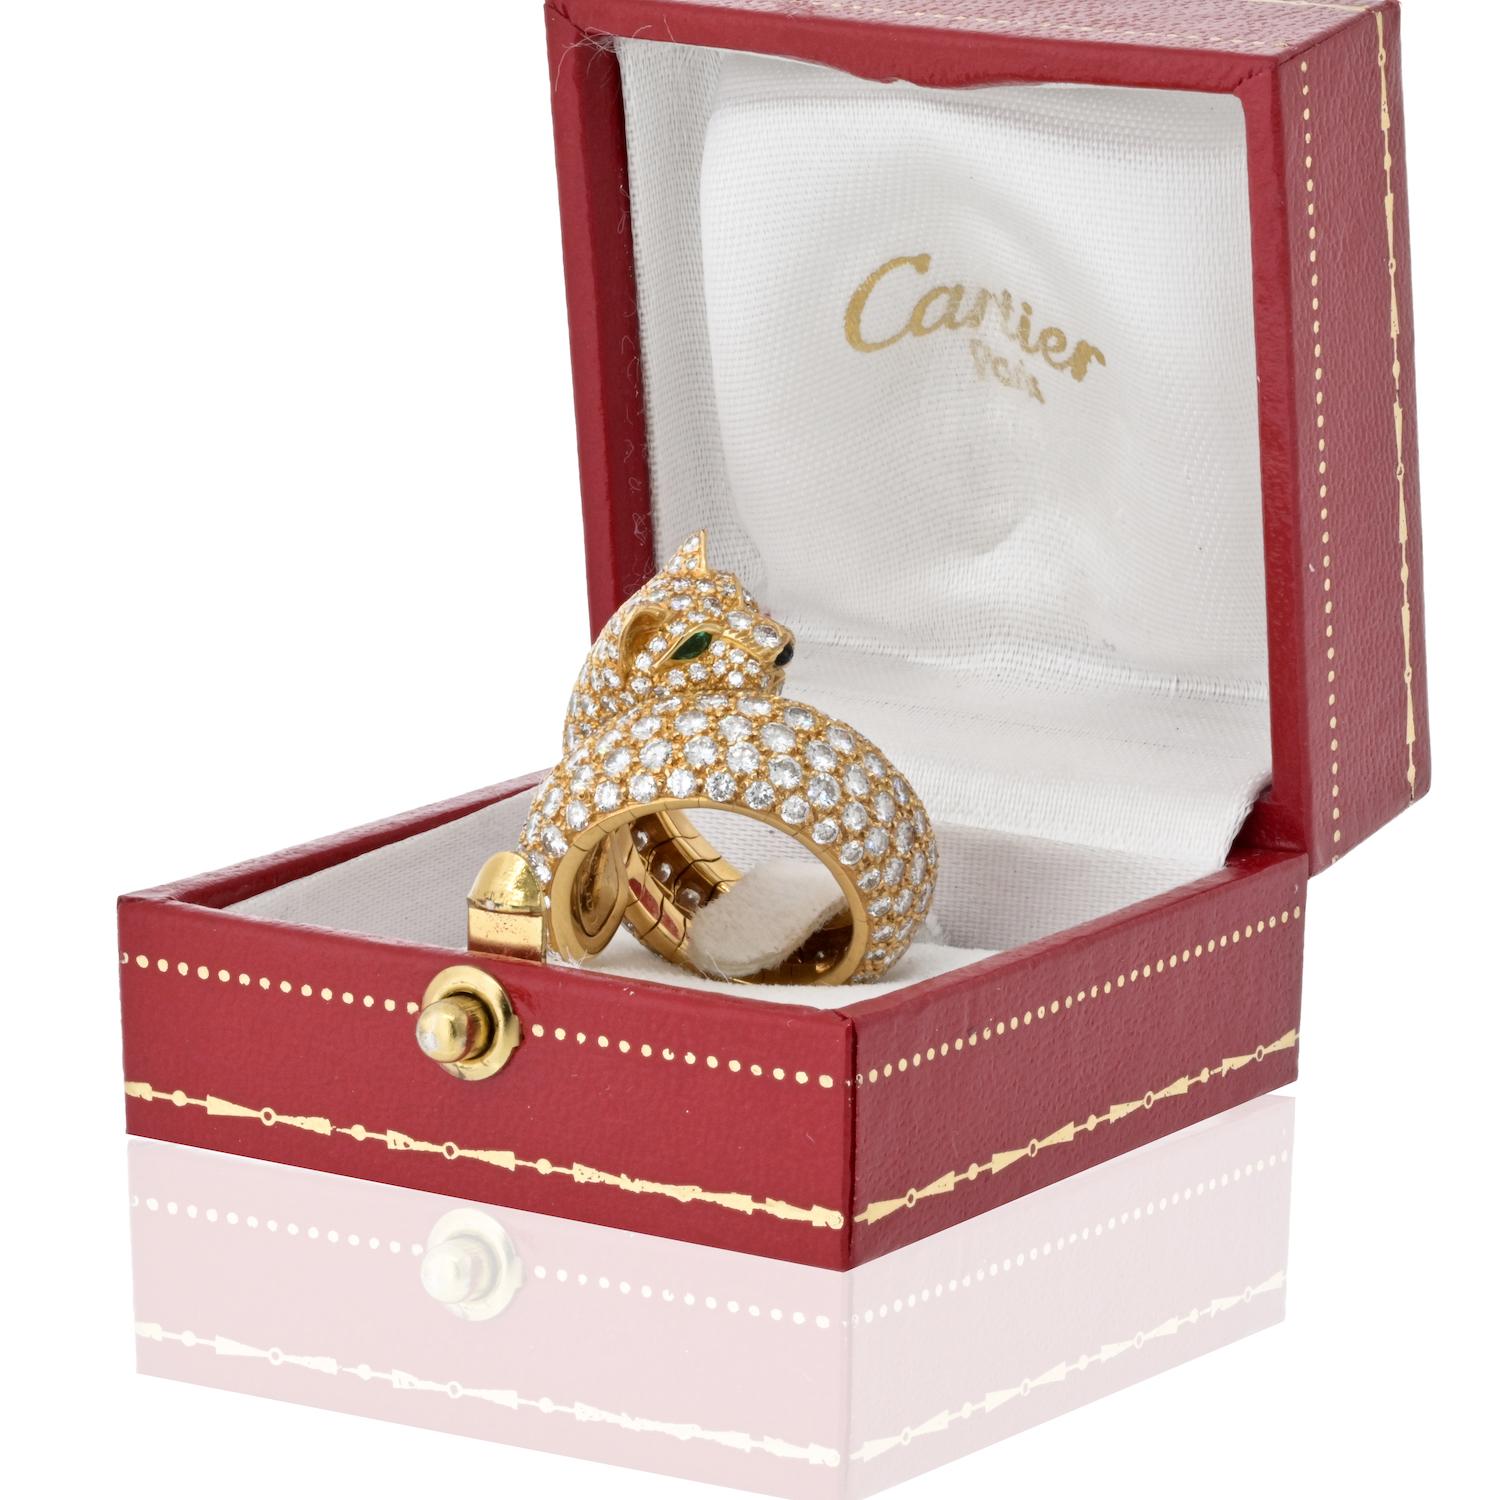 Cartier 18 Karat Yellow Gold Size 6 Diamond Panther Wrap Lakarda Ring 3